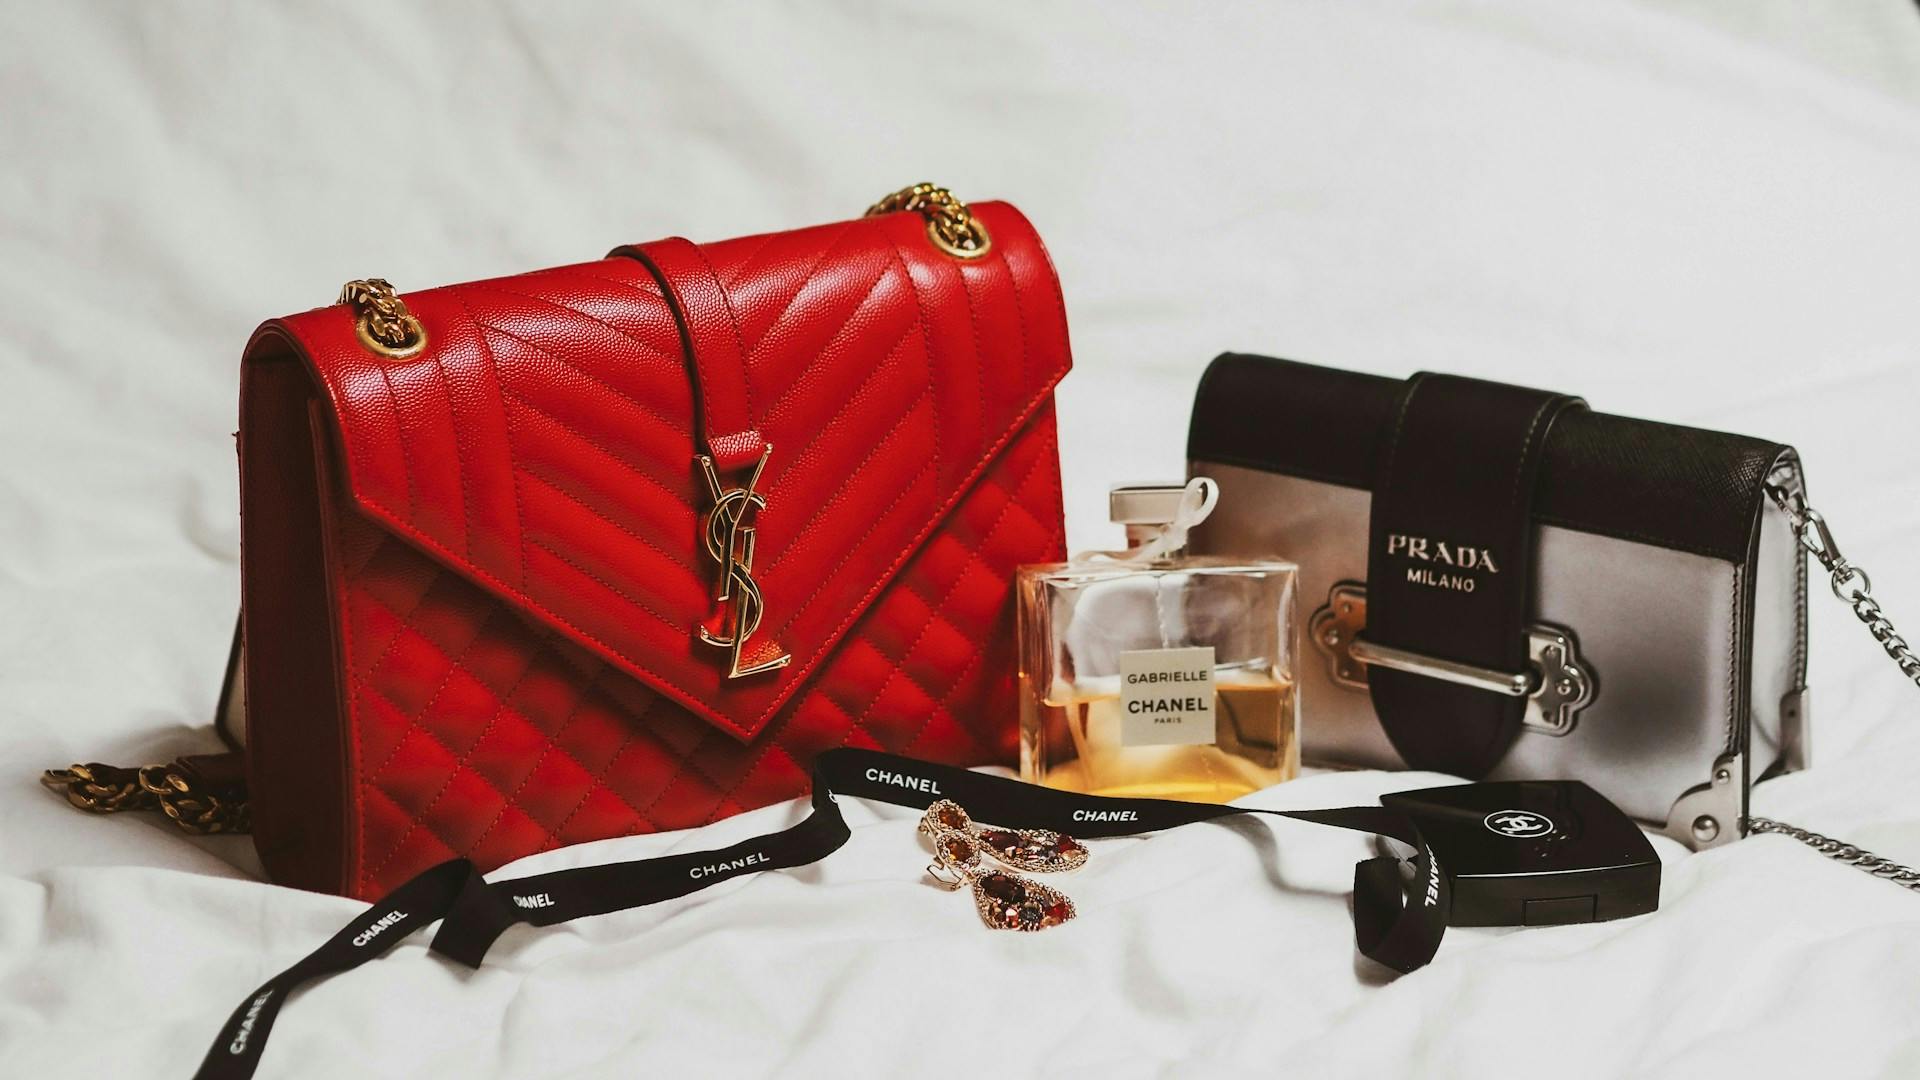 Bolsa da Prada, Perfume Chanel nº5 e outros itens de luxo.